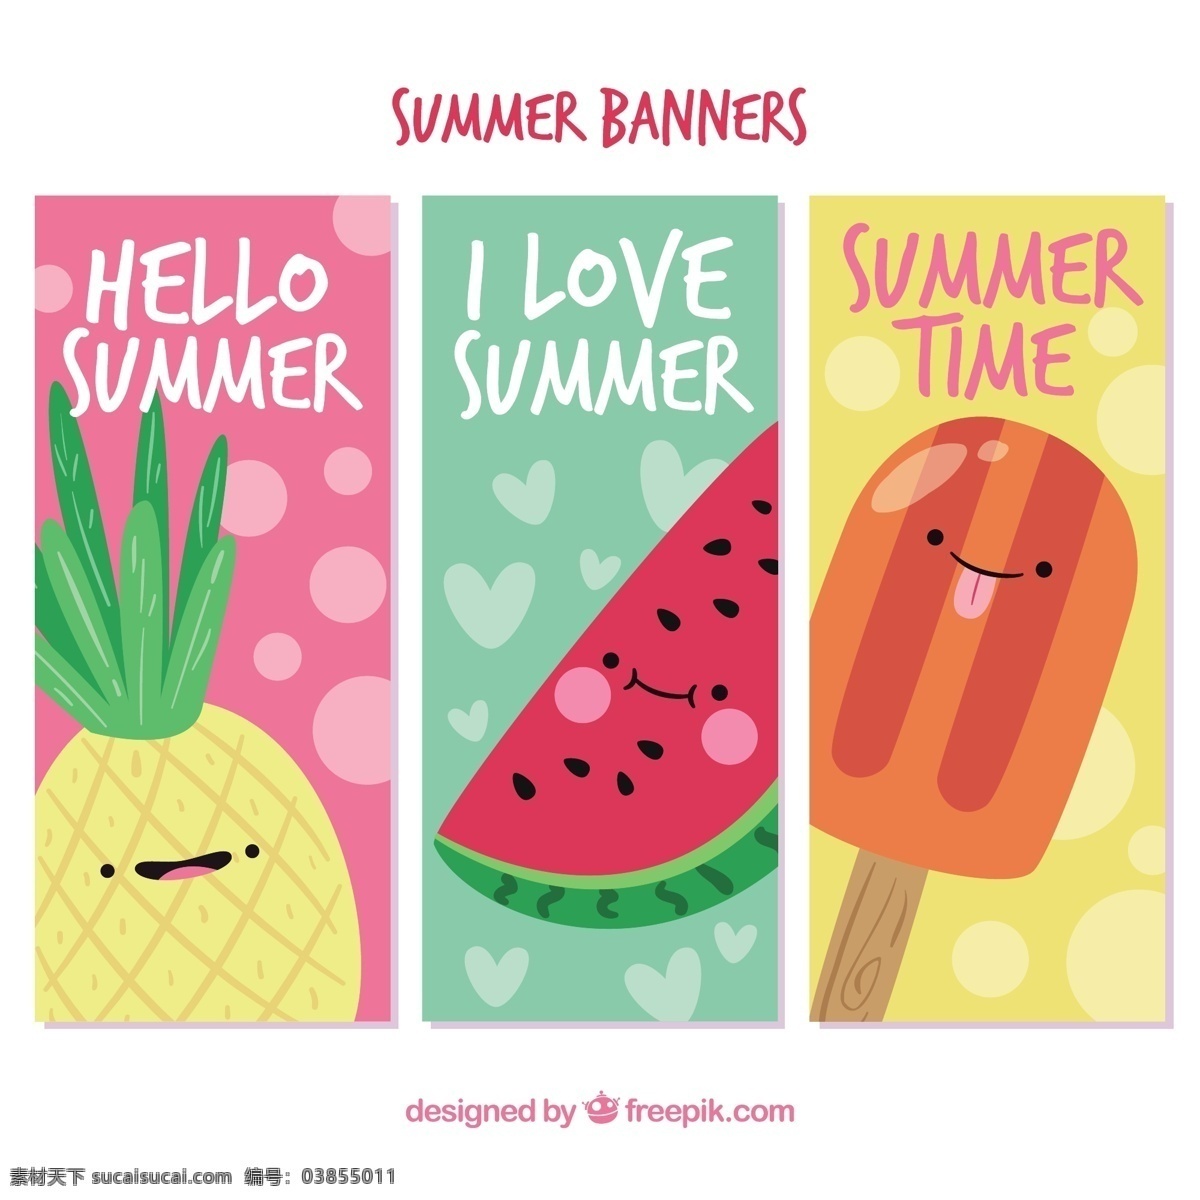 三 集 夏天 带 可爱 人物 旗帜 夏季 性格 横幅 冰淇淋 颜色 假日 冰 乐趣 菠萝 度假 有趣 西瓜 奶油 字符 表达 季节